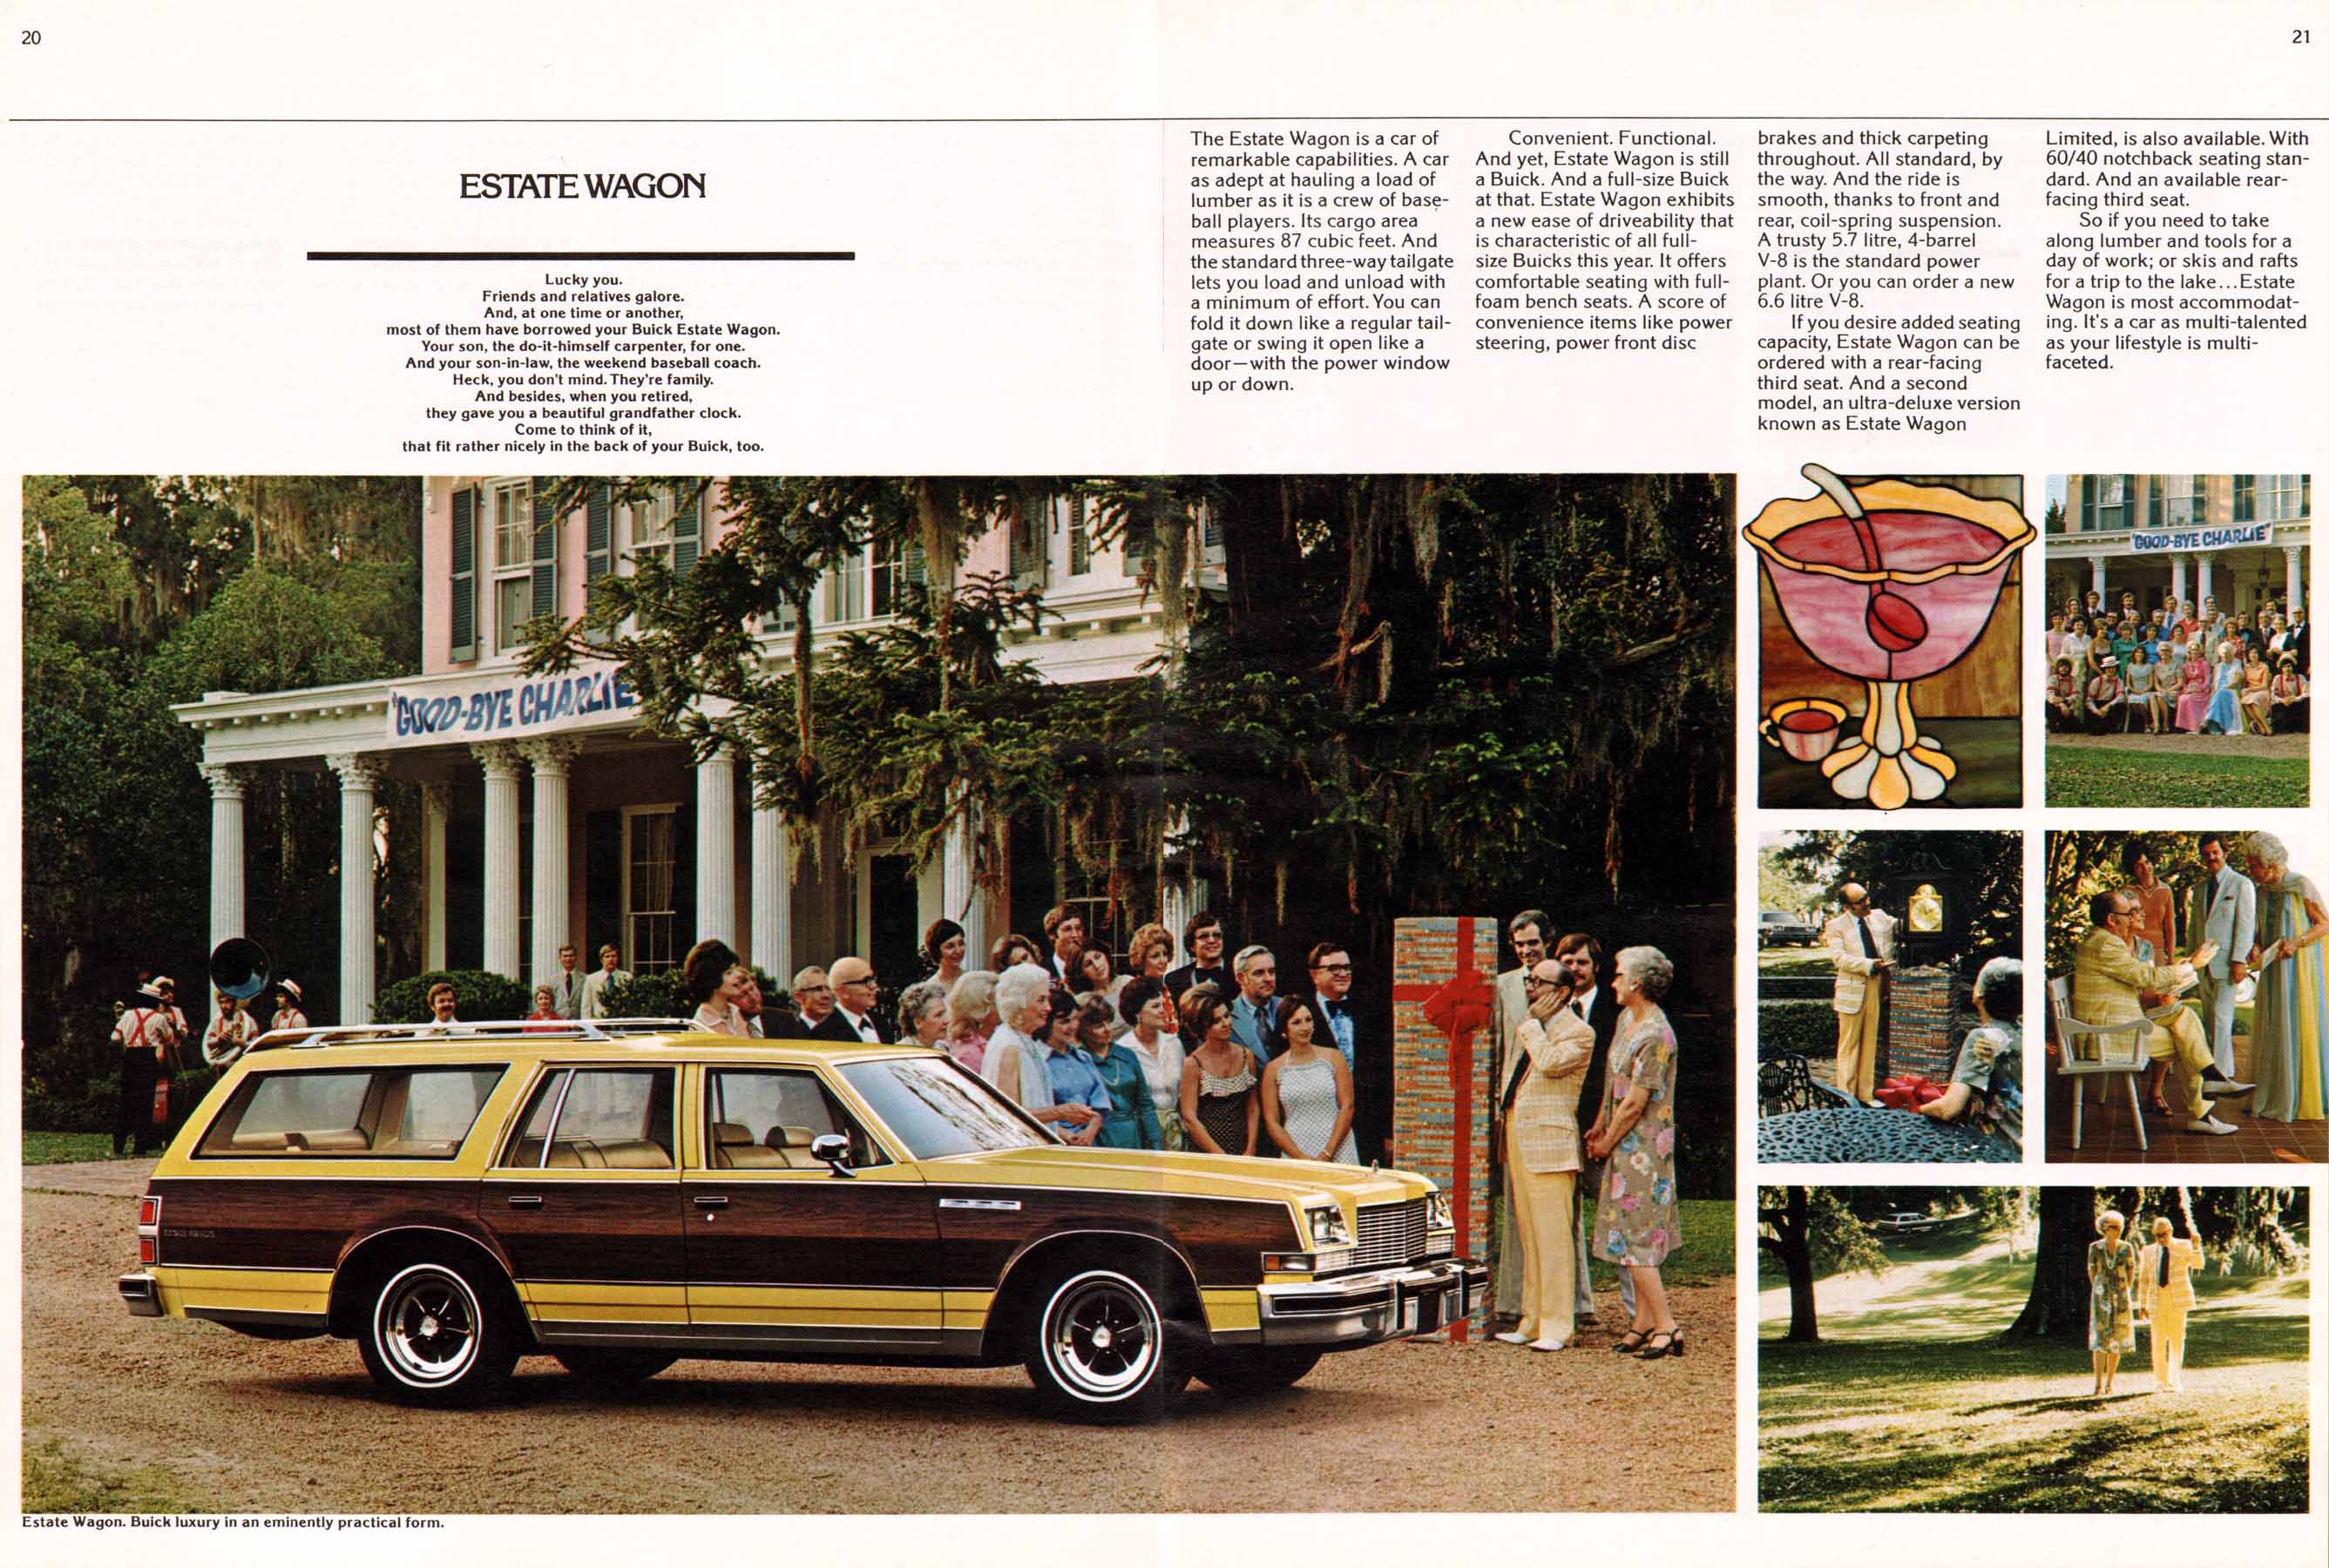 1977 Buick Full Line-20-21